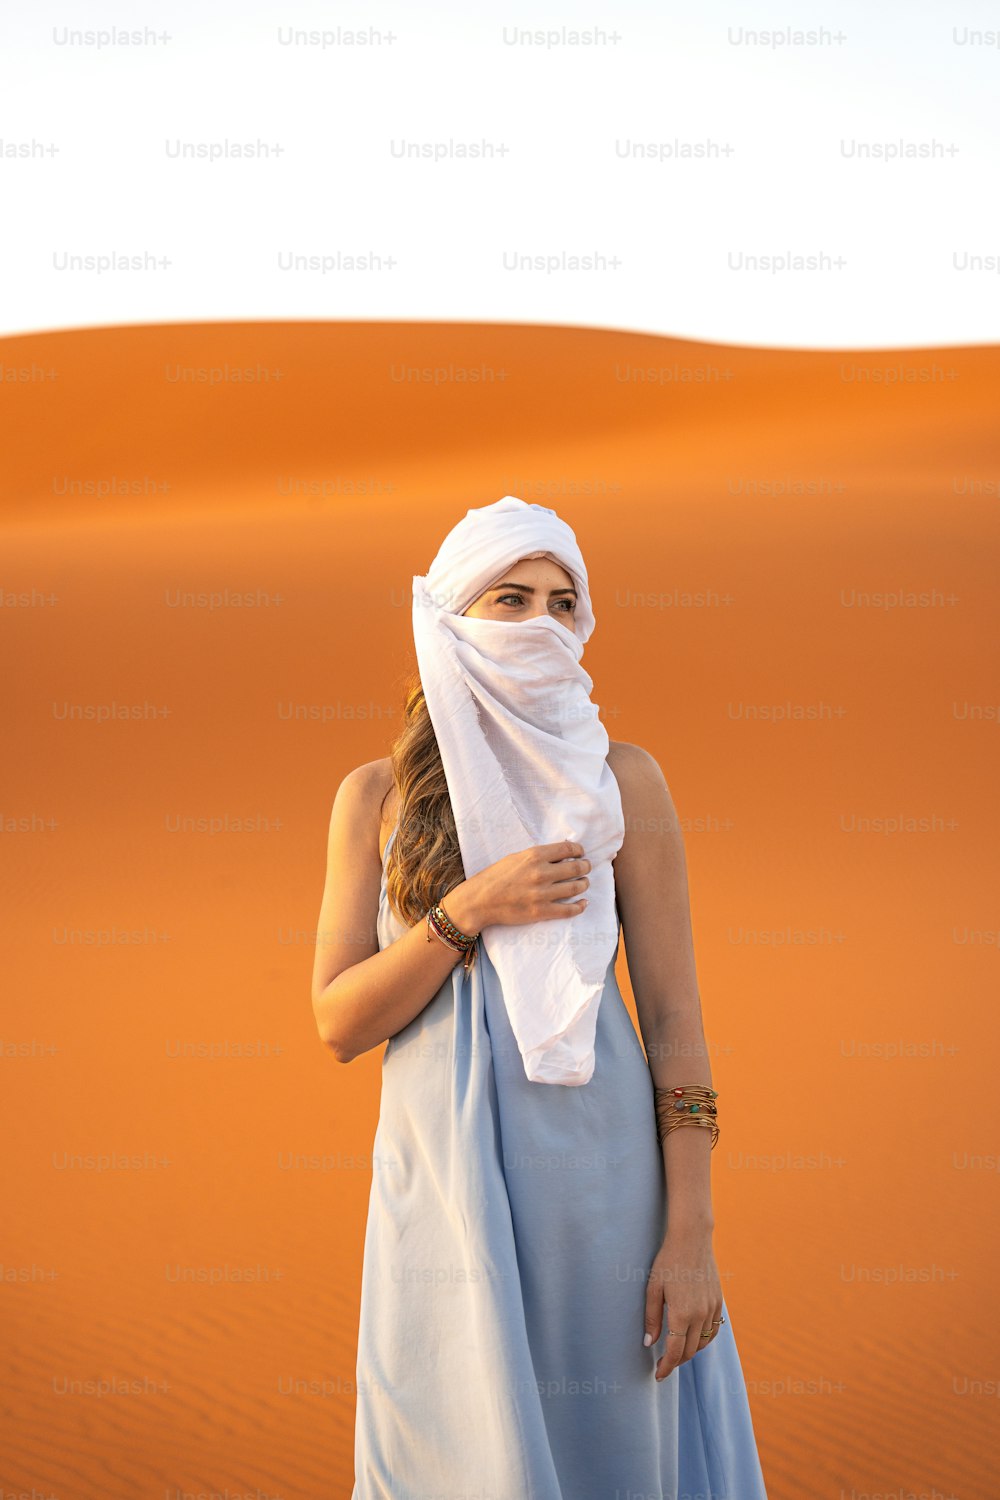 사막에 서 있는 파란 드레스를 입은 여자